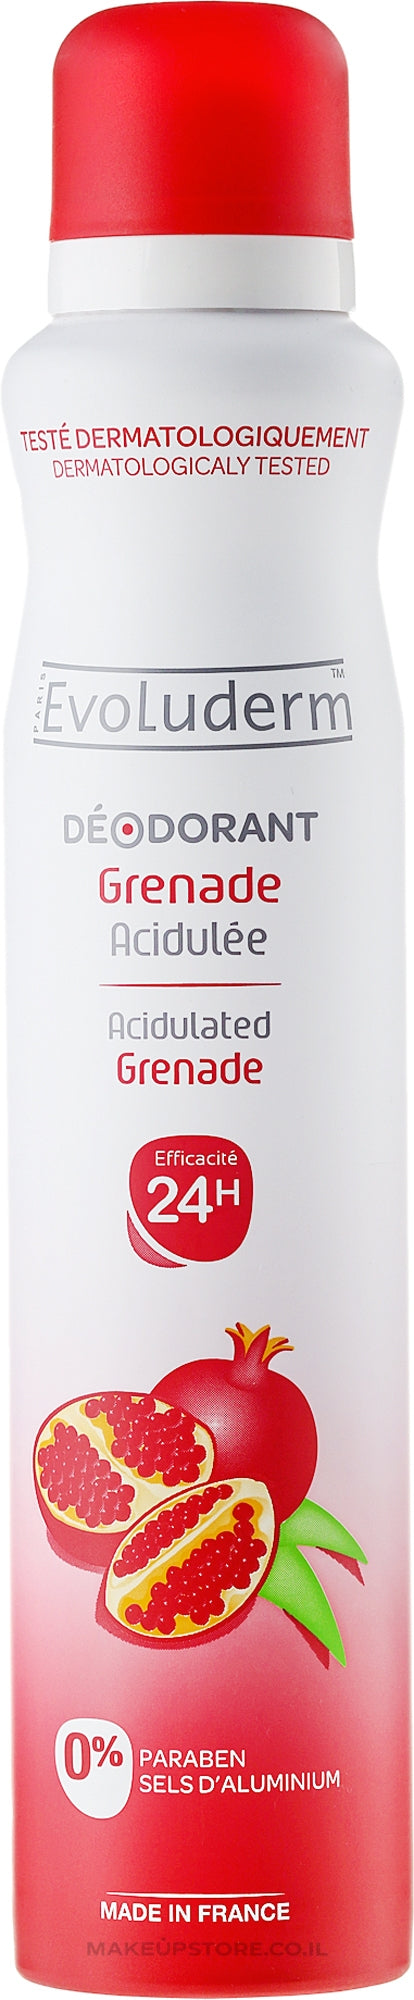 Buy Evoluderm Deodorant Grenade - 200ml in Pakistan